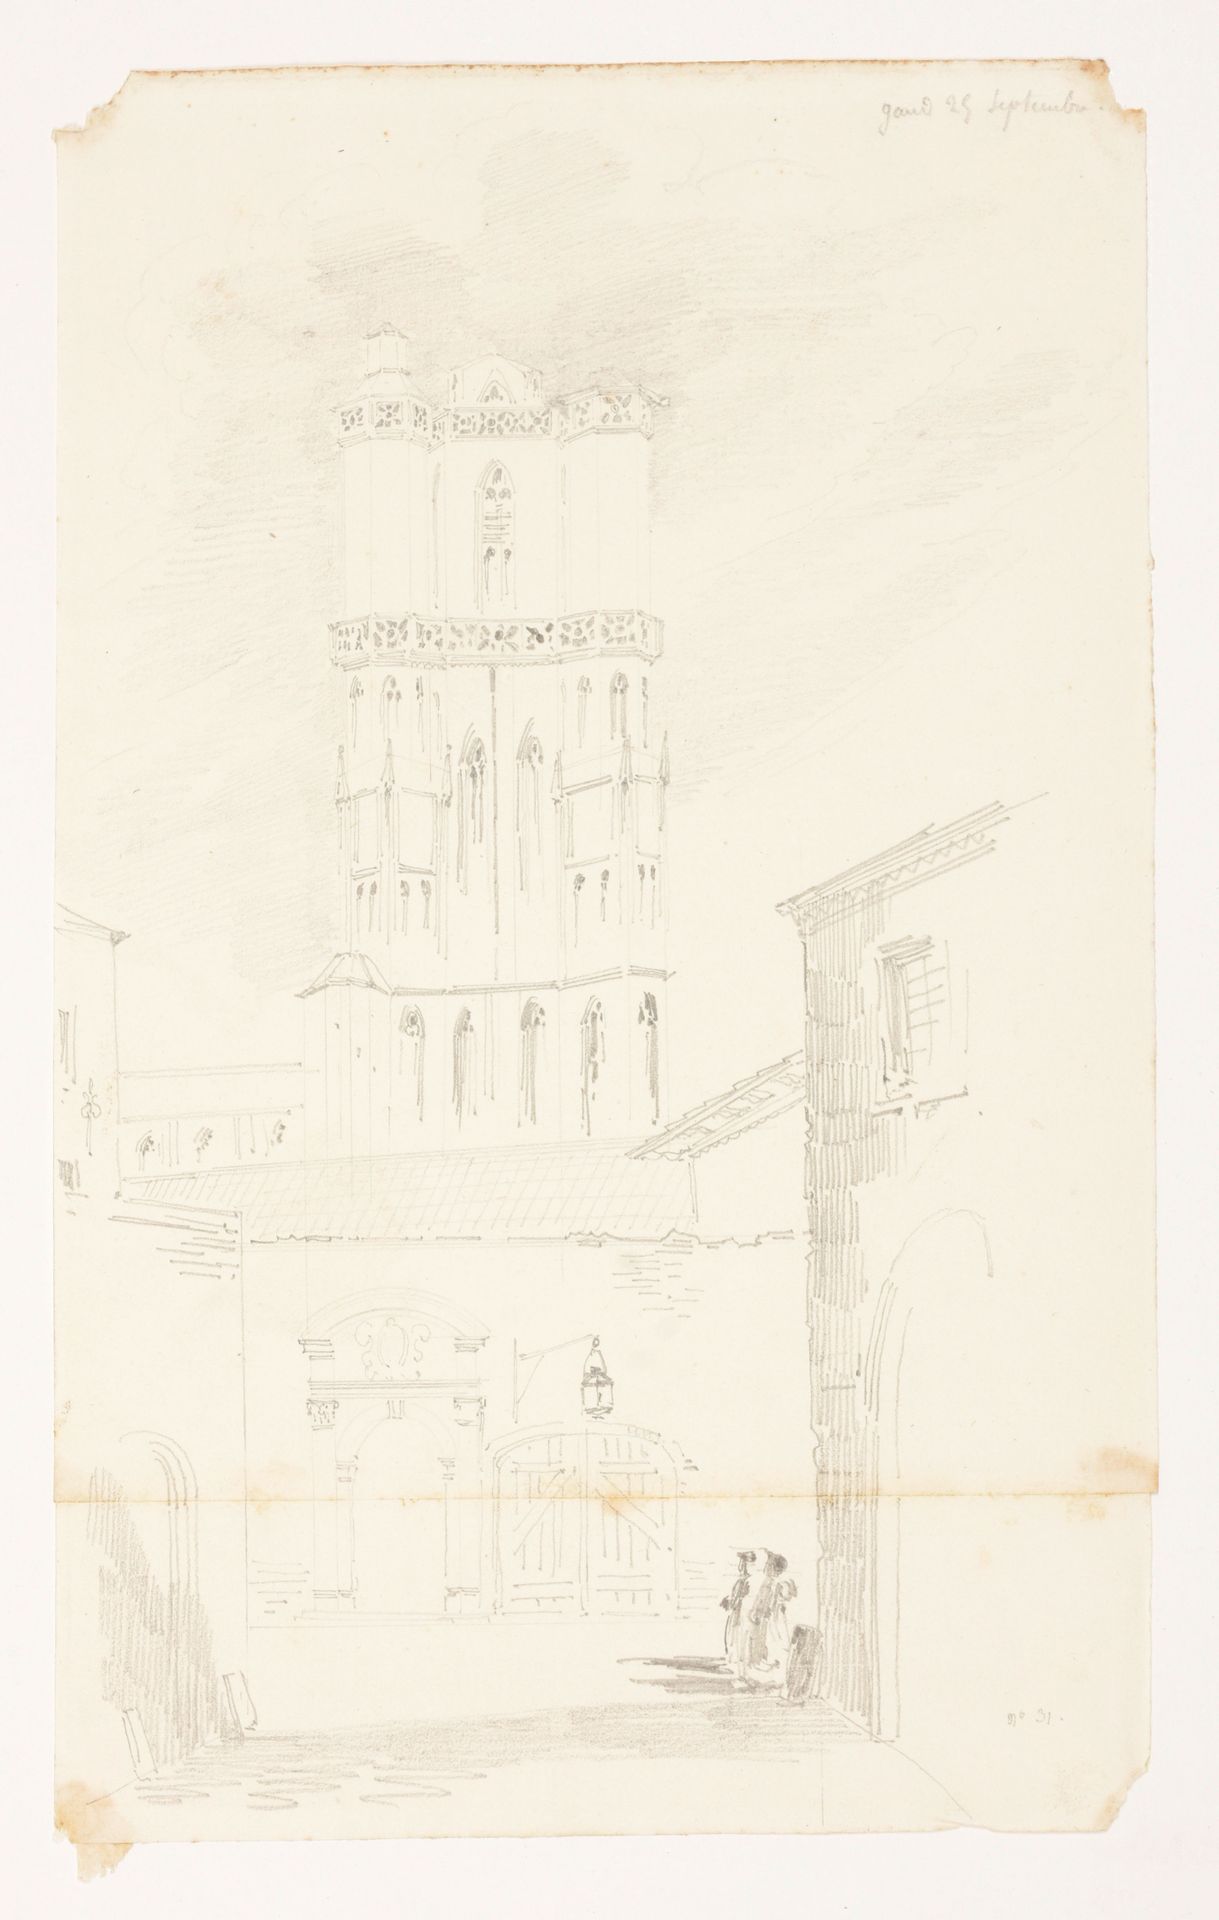 [Gent] Il molo domenicano di Gand (1829)

Potloodtekening (16 x 20,5 cm), zonder&hellip;